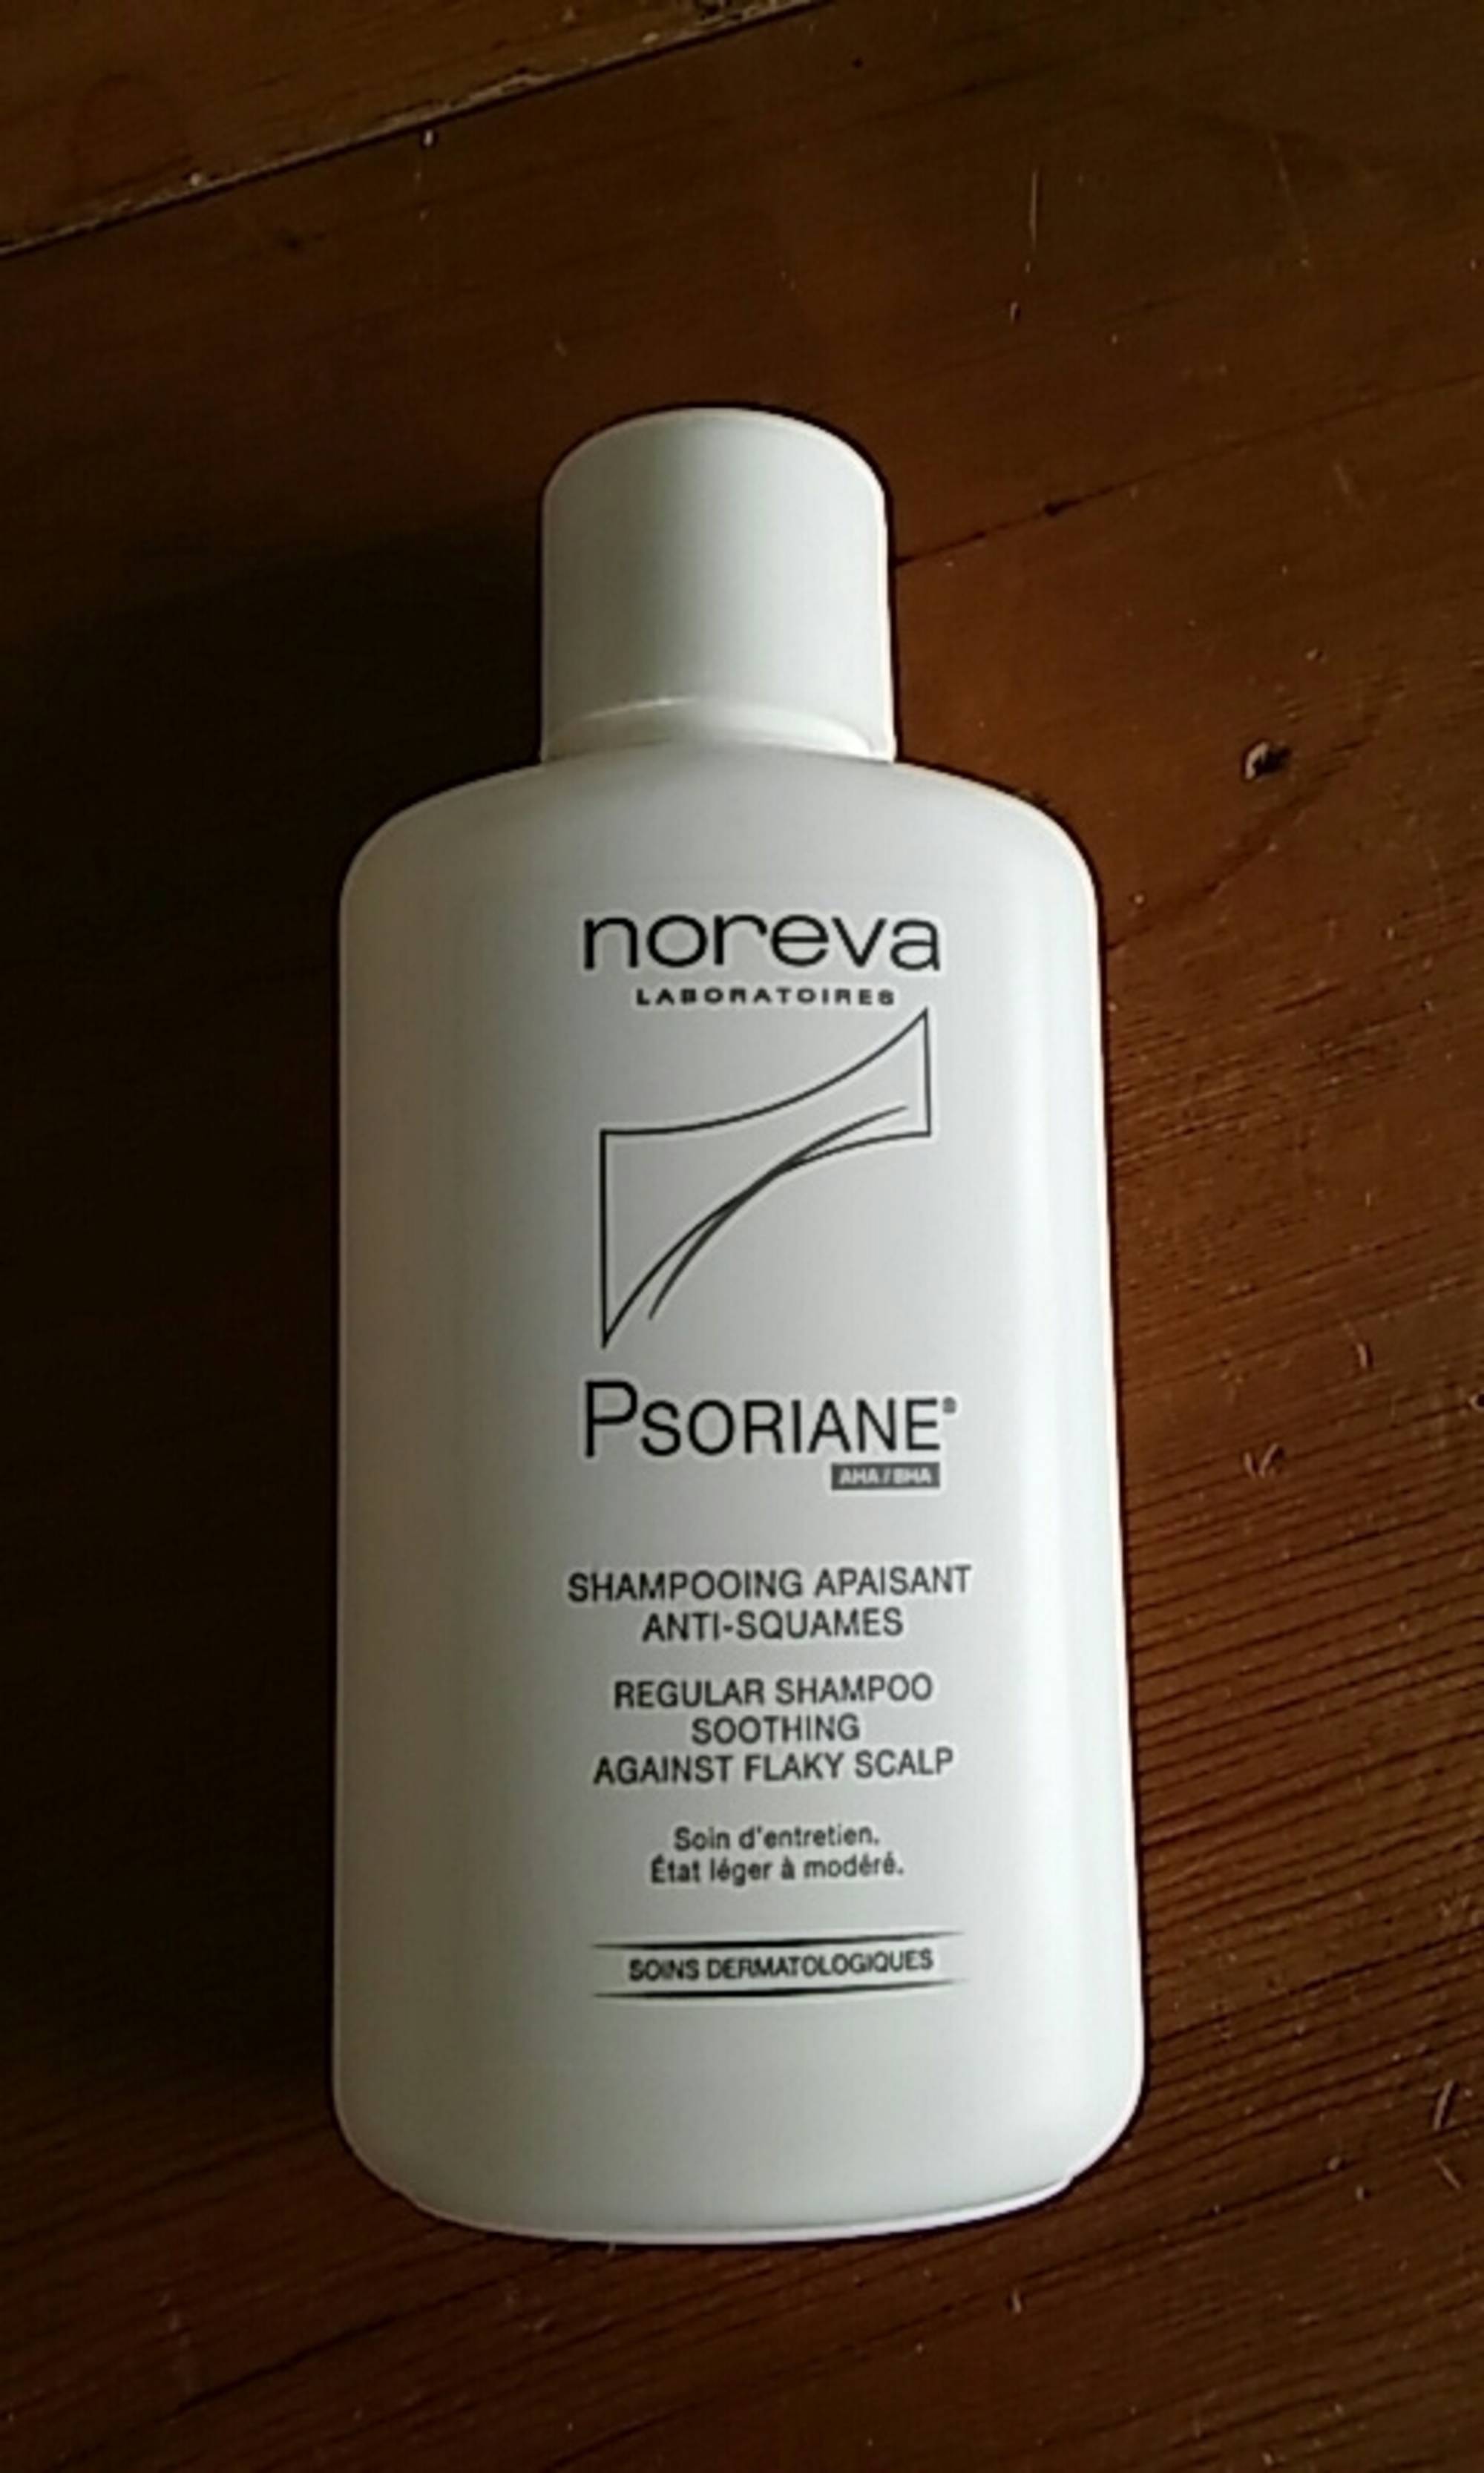 NOREVA LABORATOIRES - Psoriane - Shampooing apaisant anti-squames